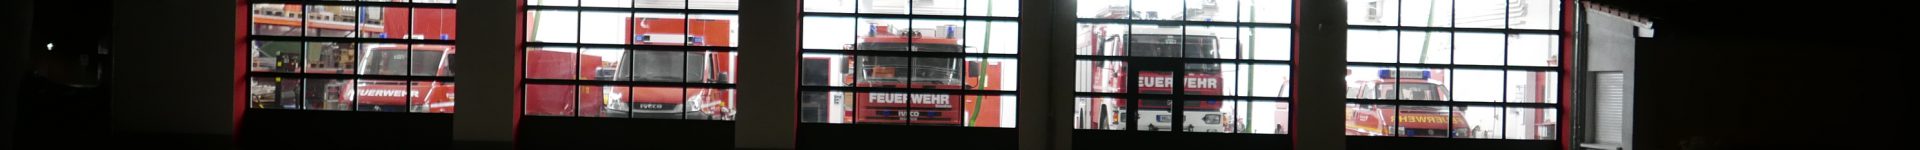 Feuerwehrverein Kassel Wasser Marsch am Herkules